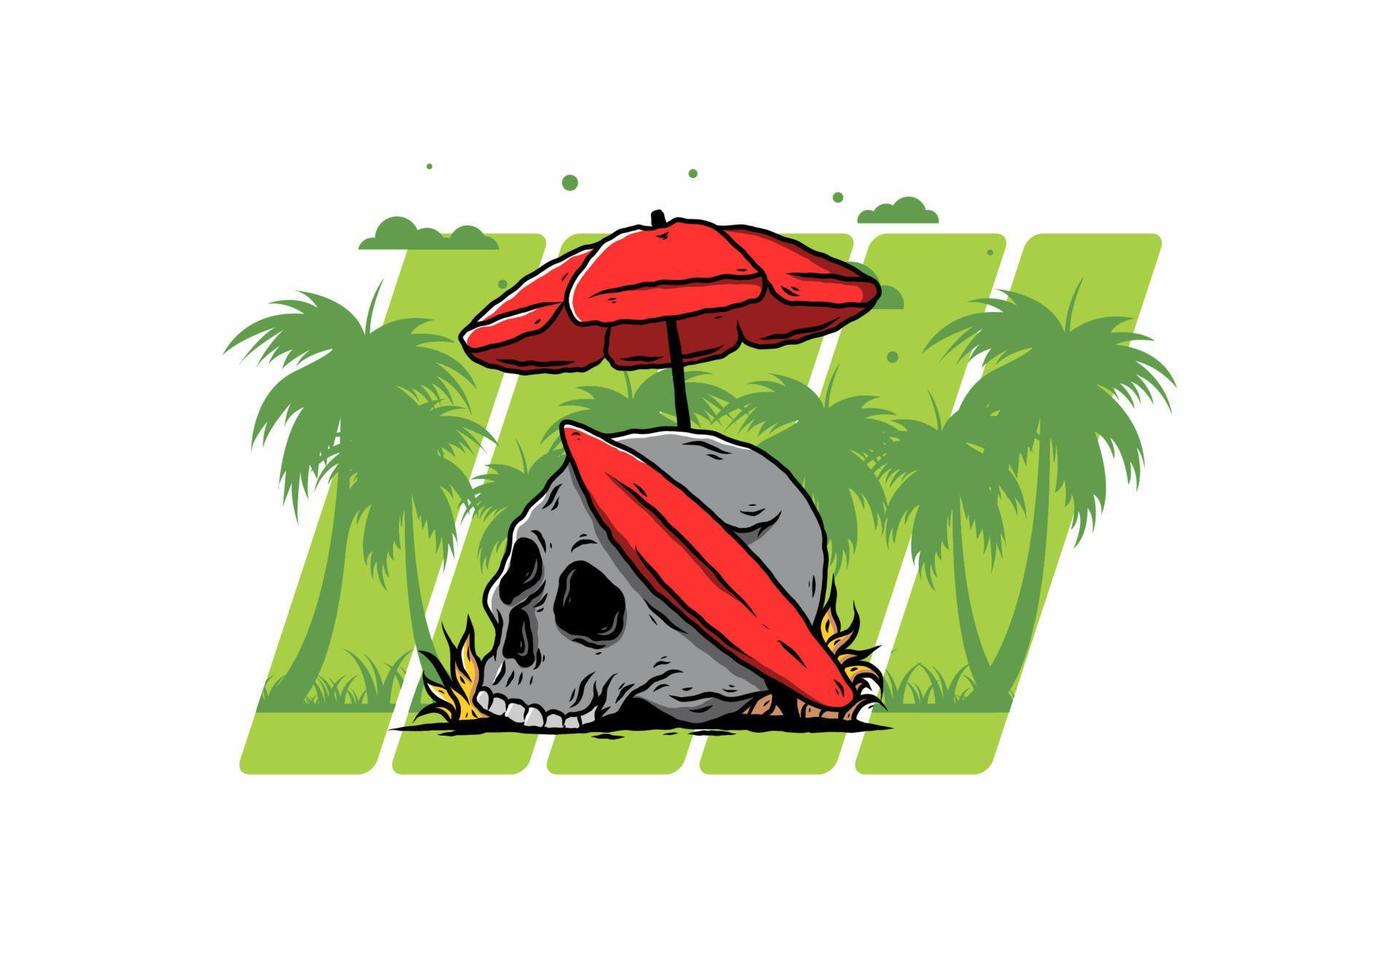 illustratie van schedel met surfplank onder parasol vector